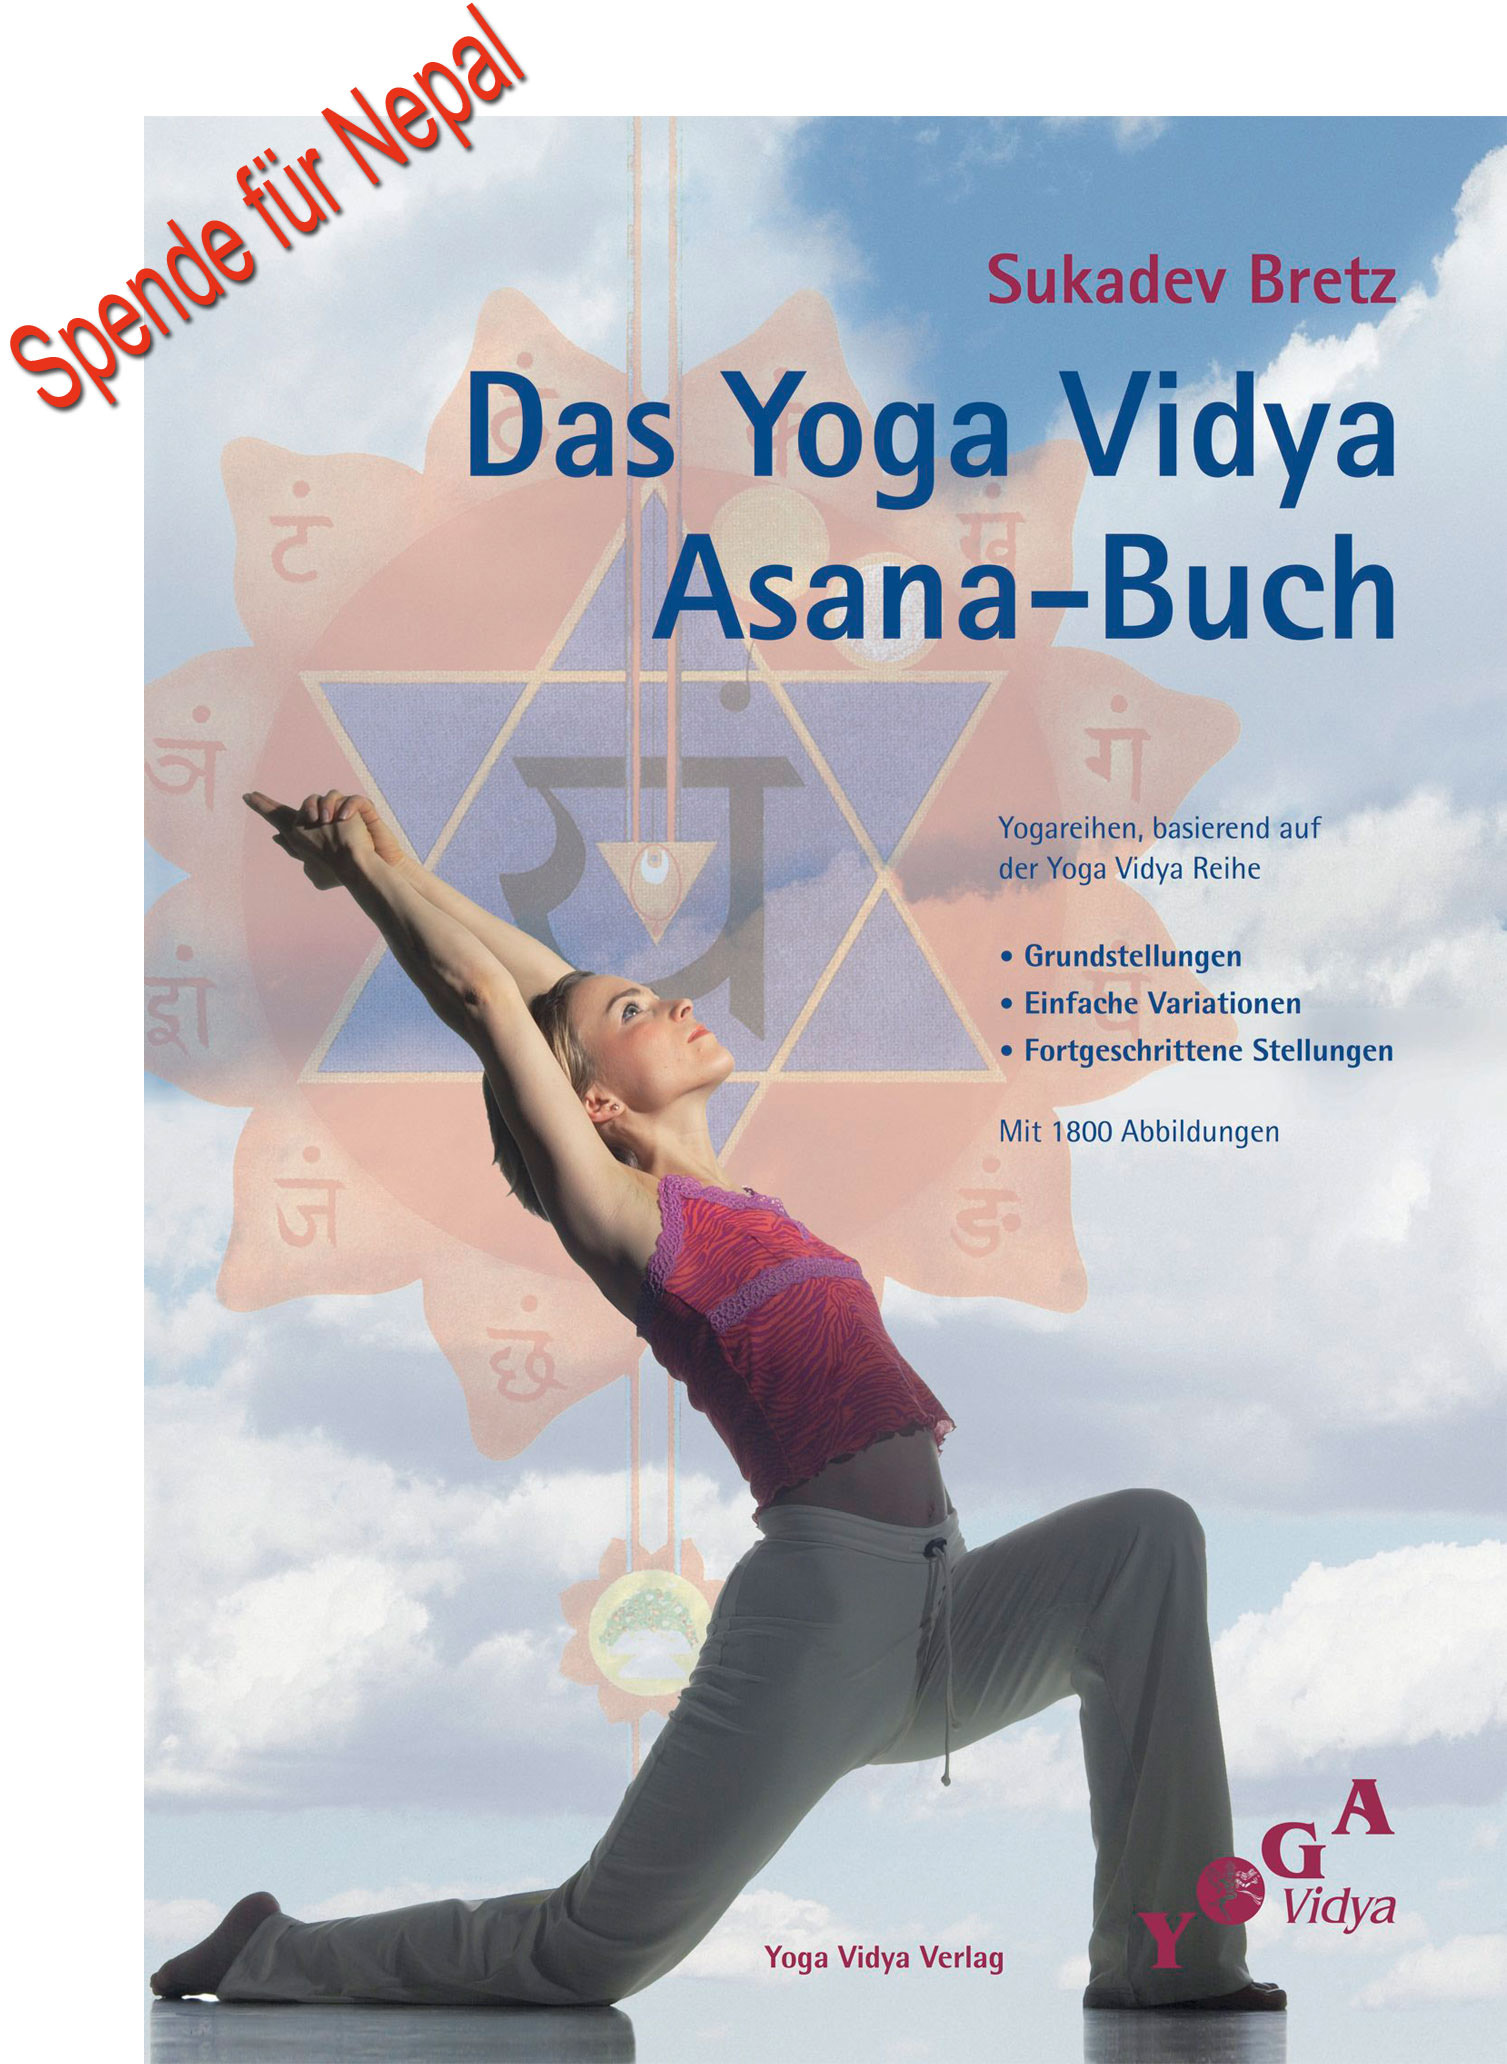 Yoga Vidya Asana Buch